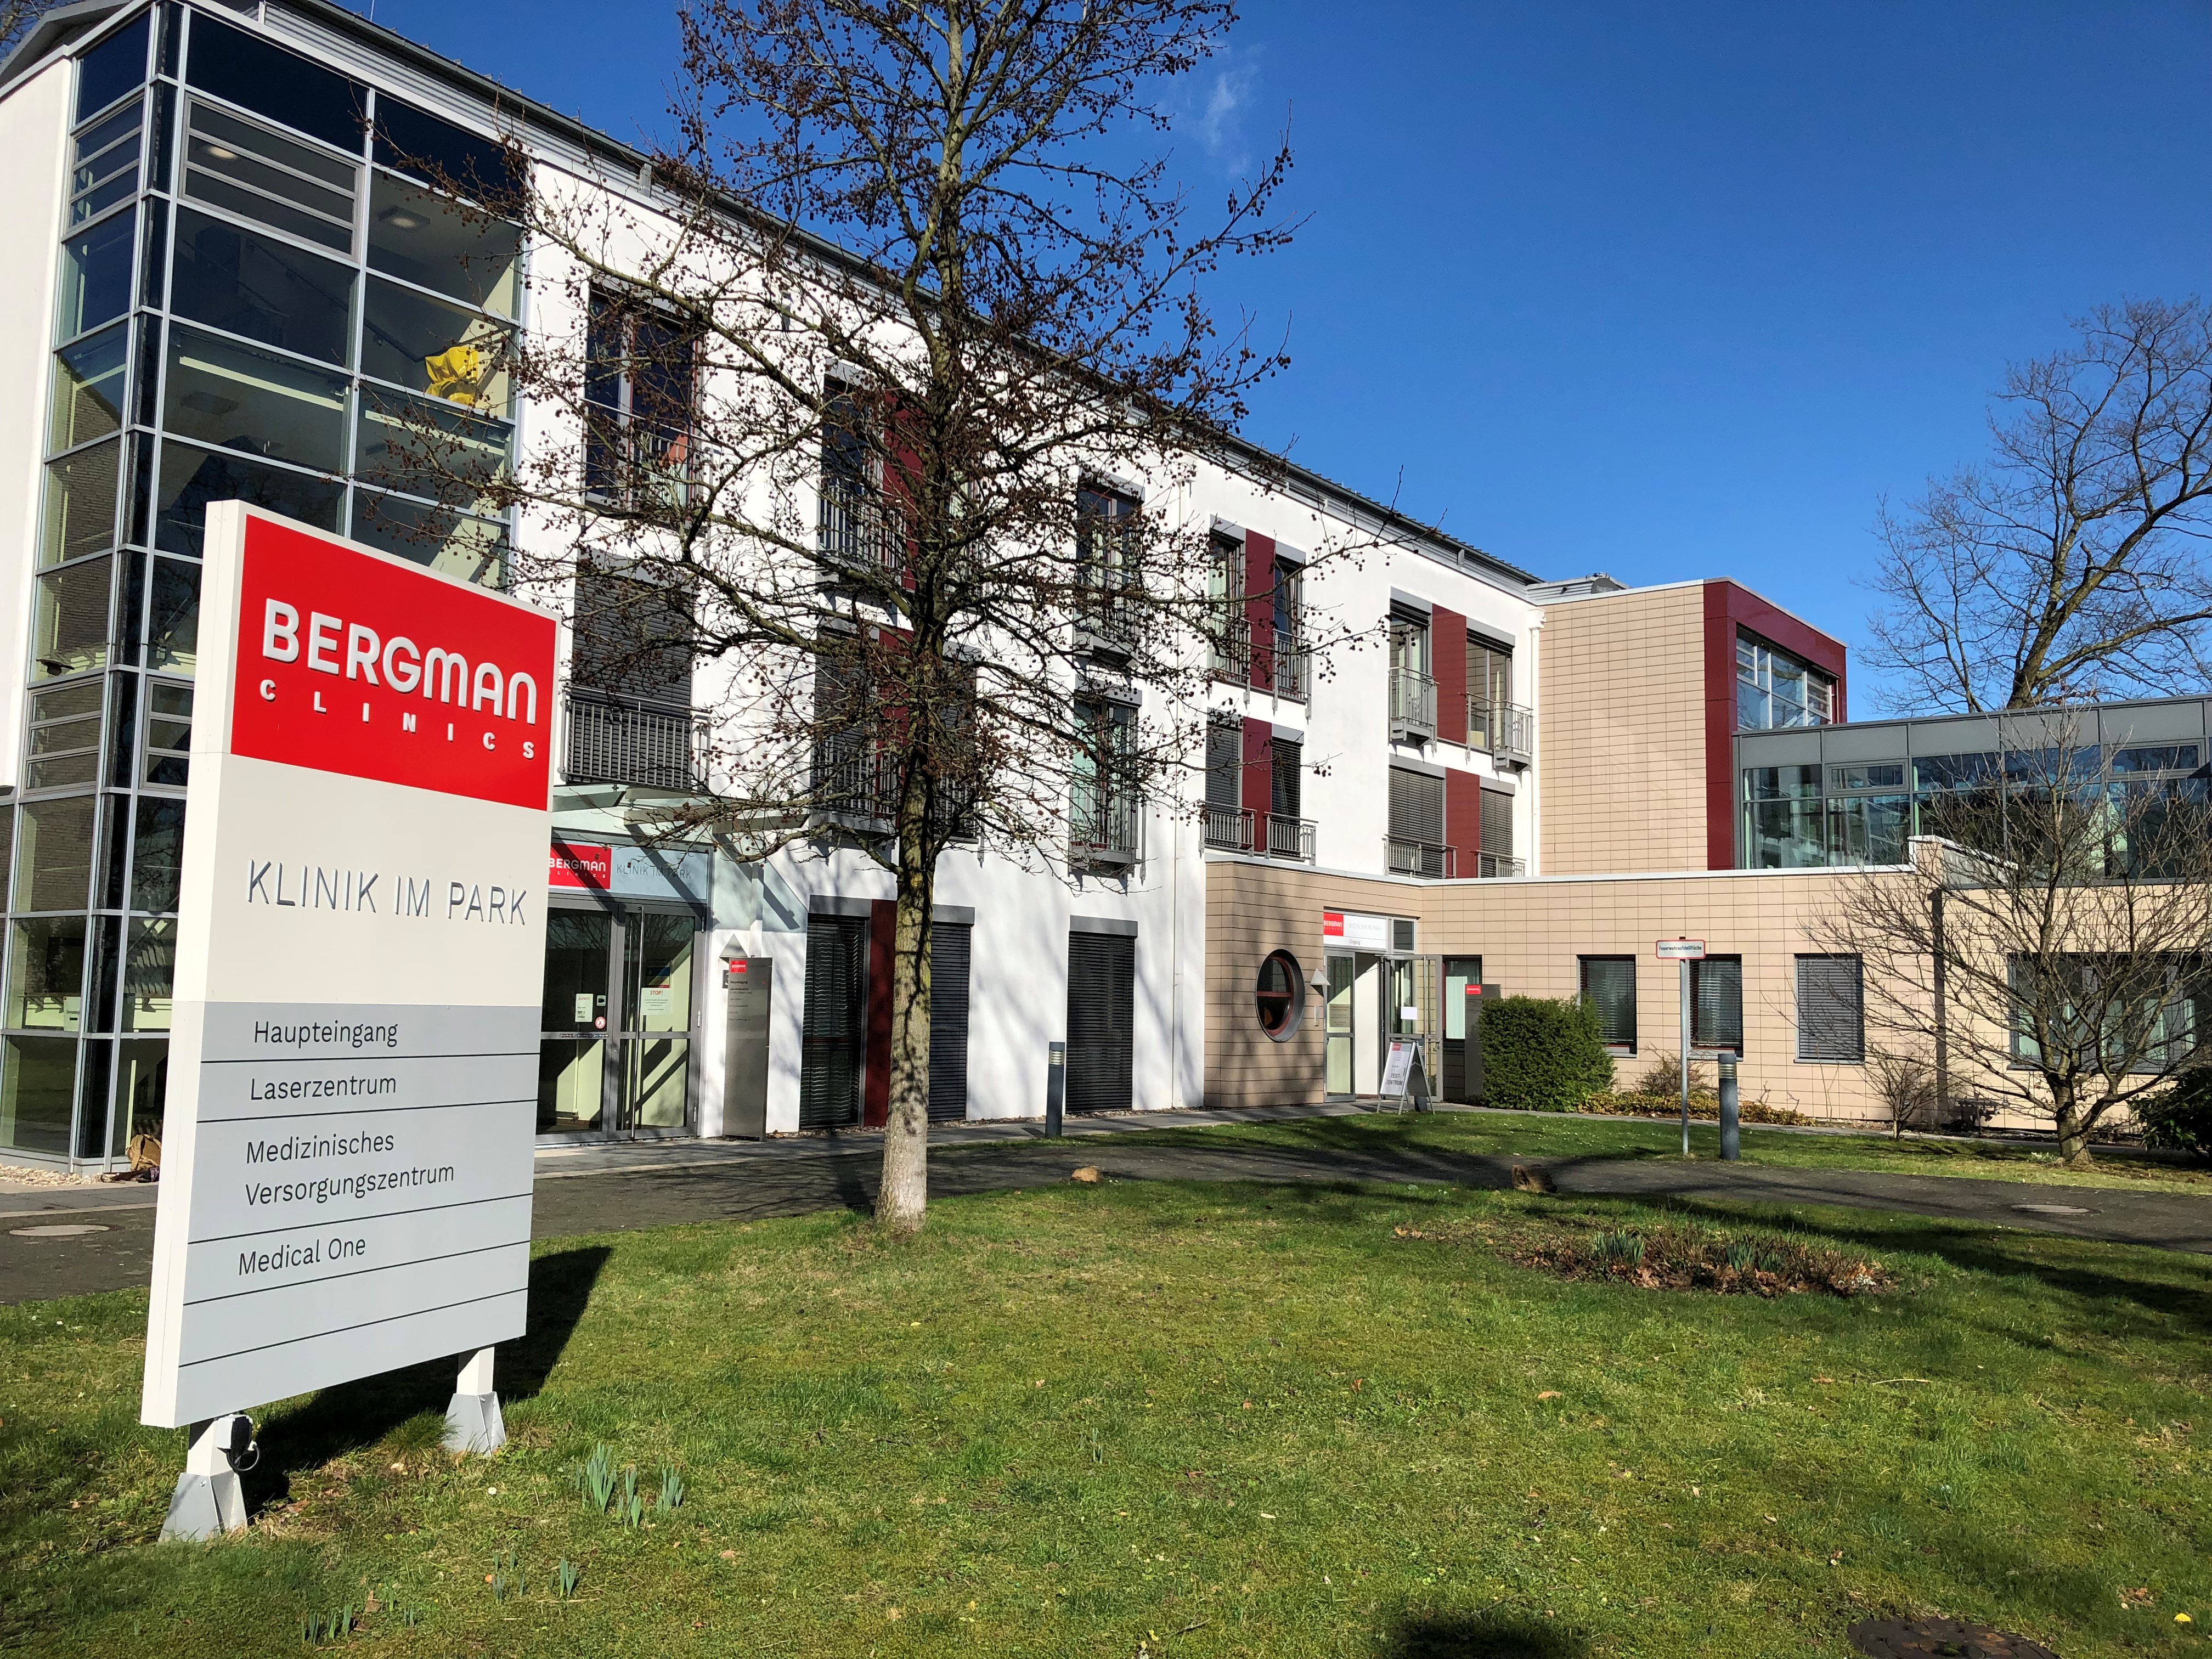 KIP Orthopädiehandel Sanitätshaus in Hilden - Außenansicht Bergman Klinik im Park